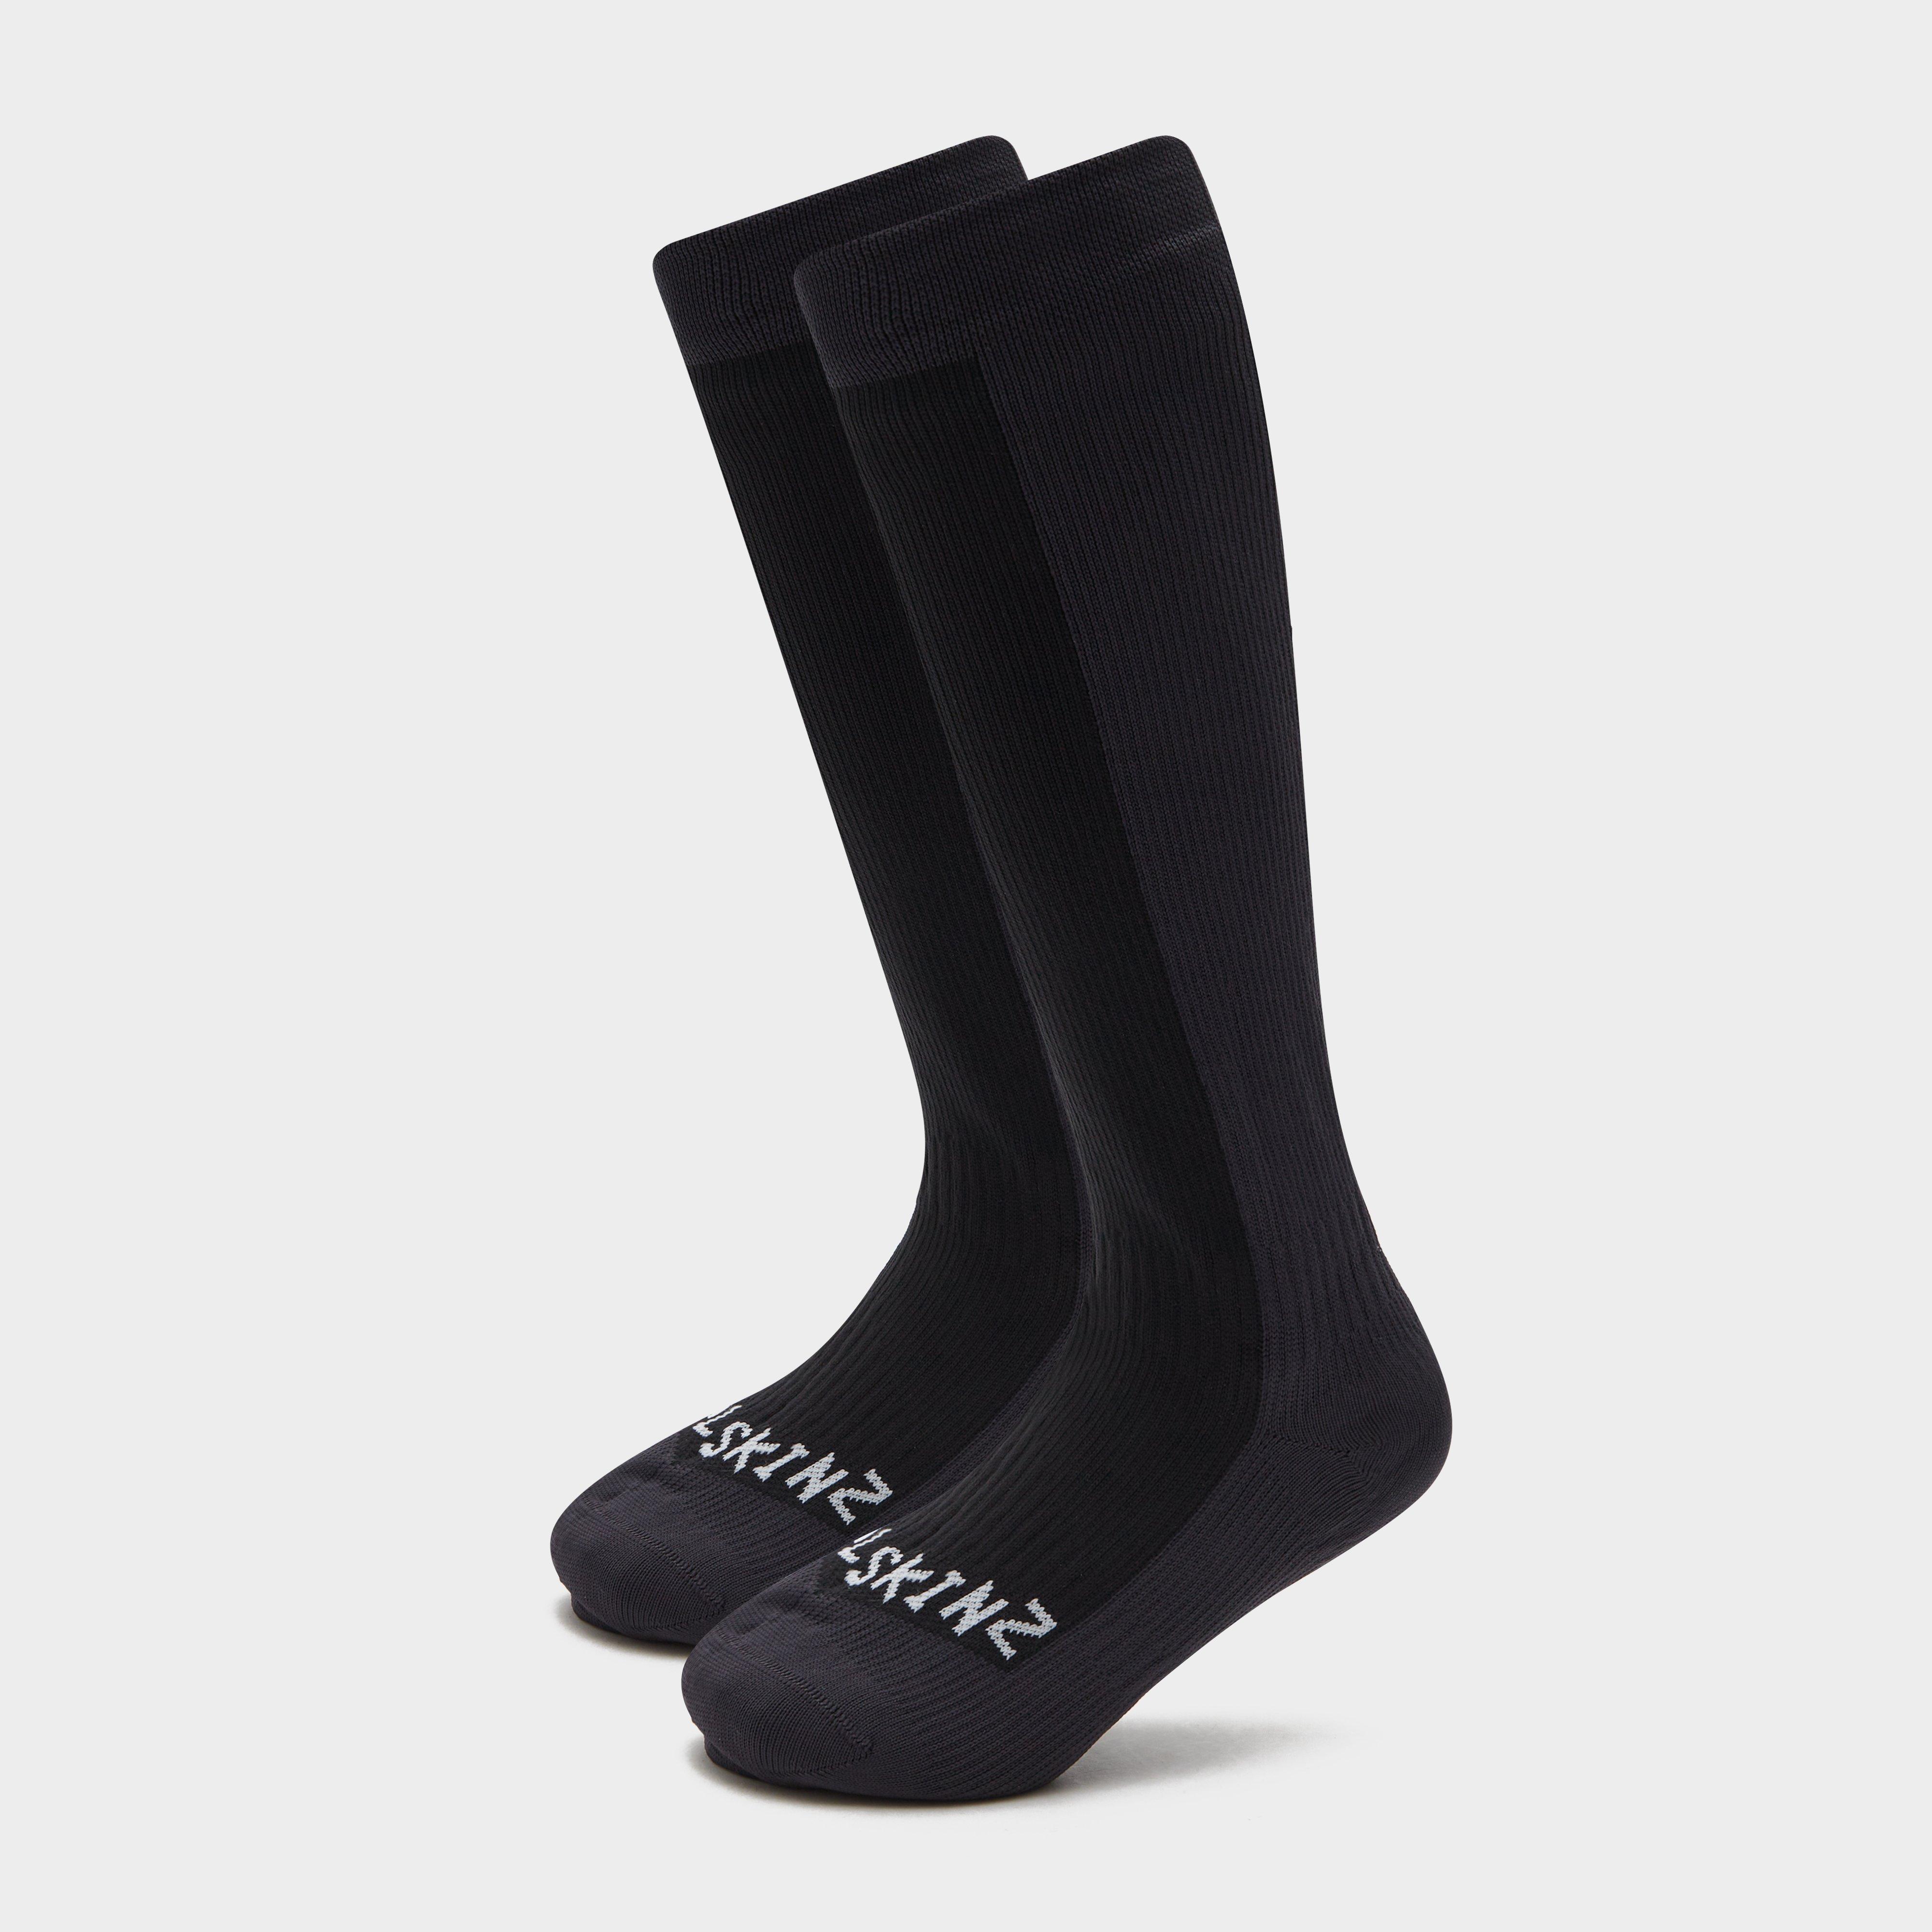  Sealskinz Waterproof Knee Socks, Black